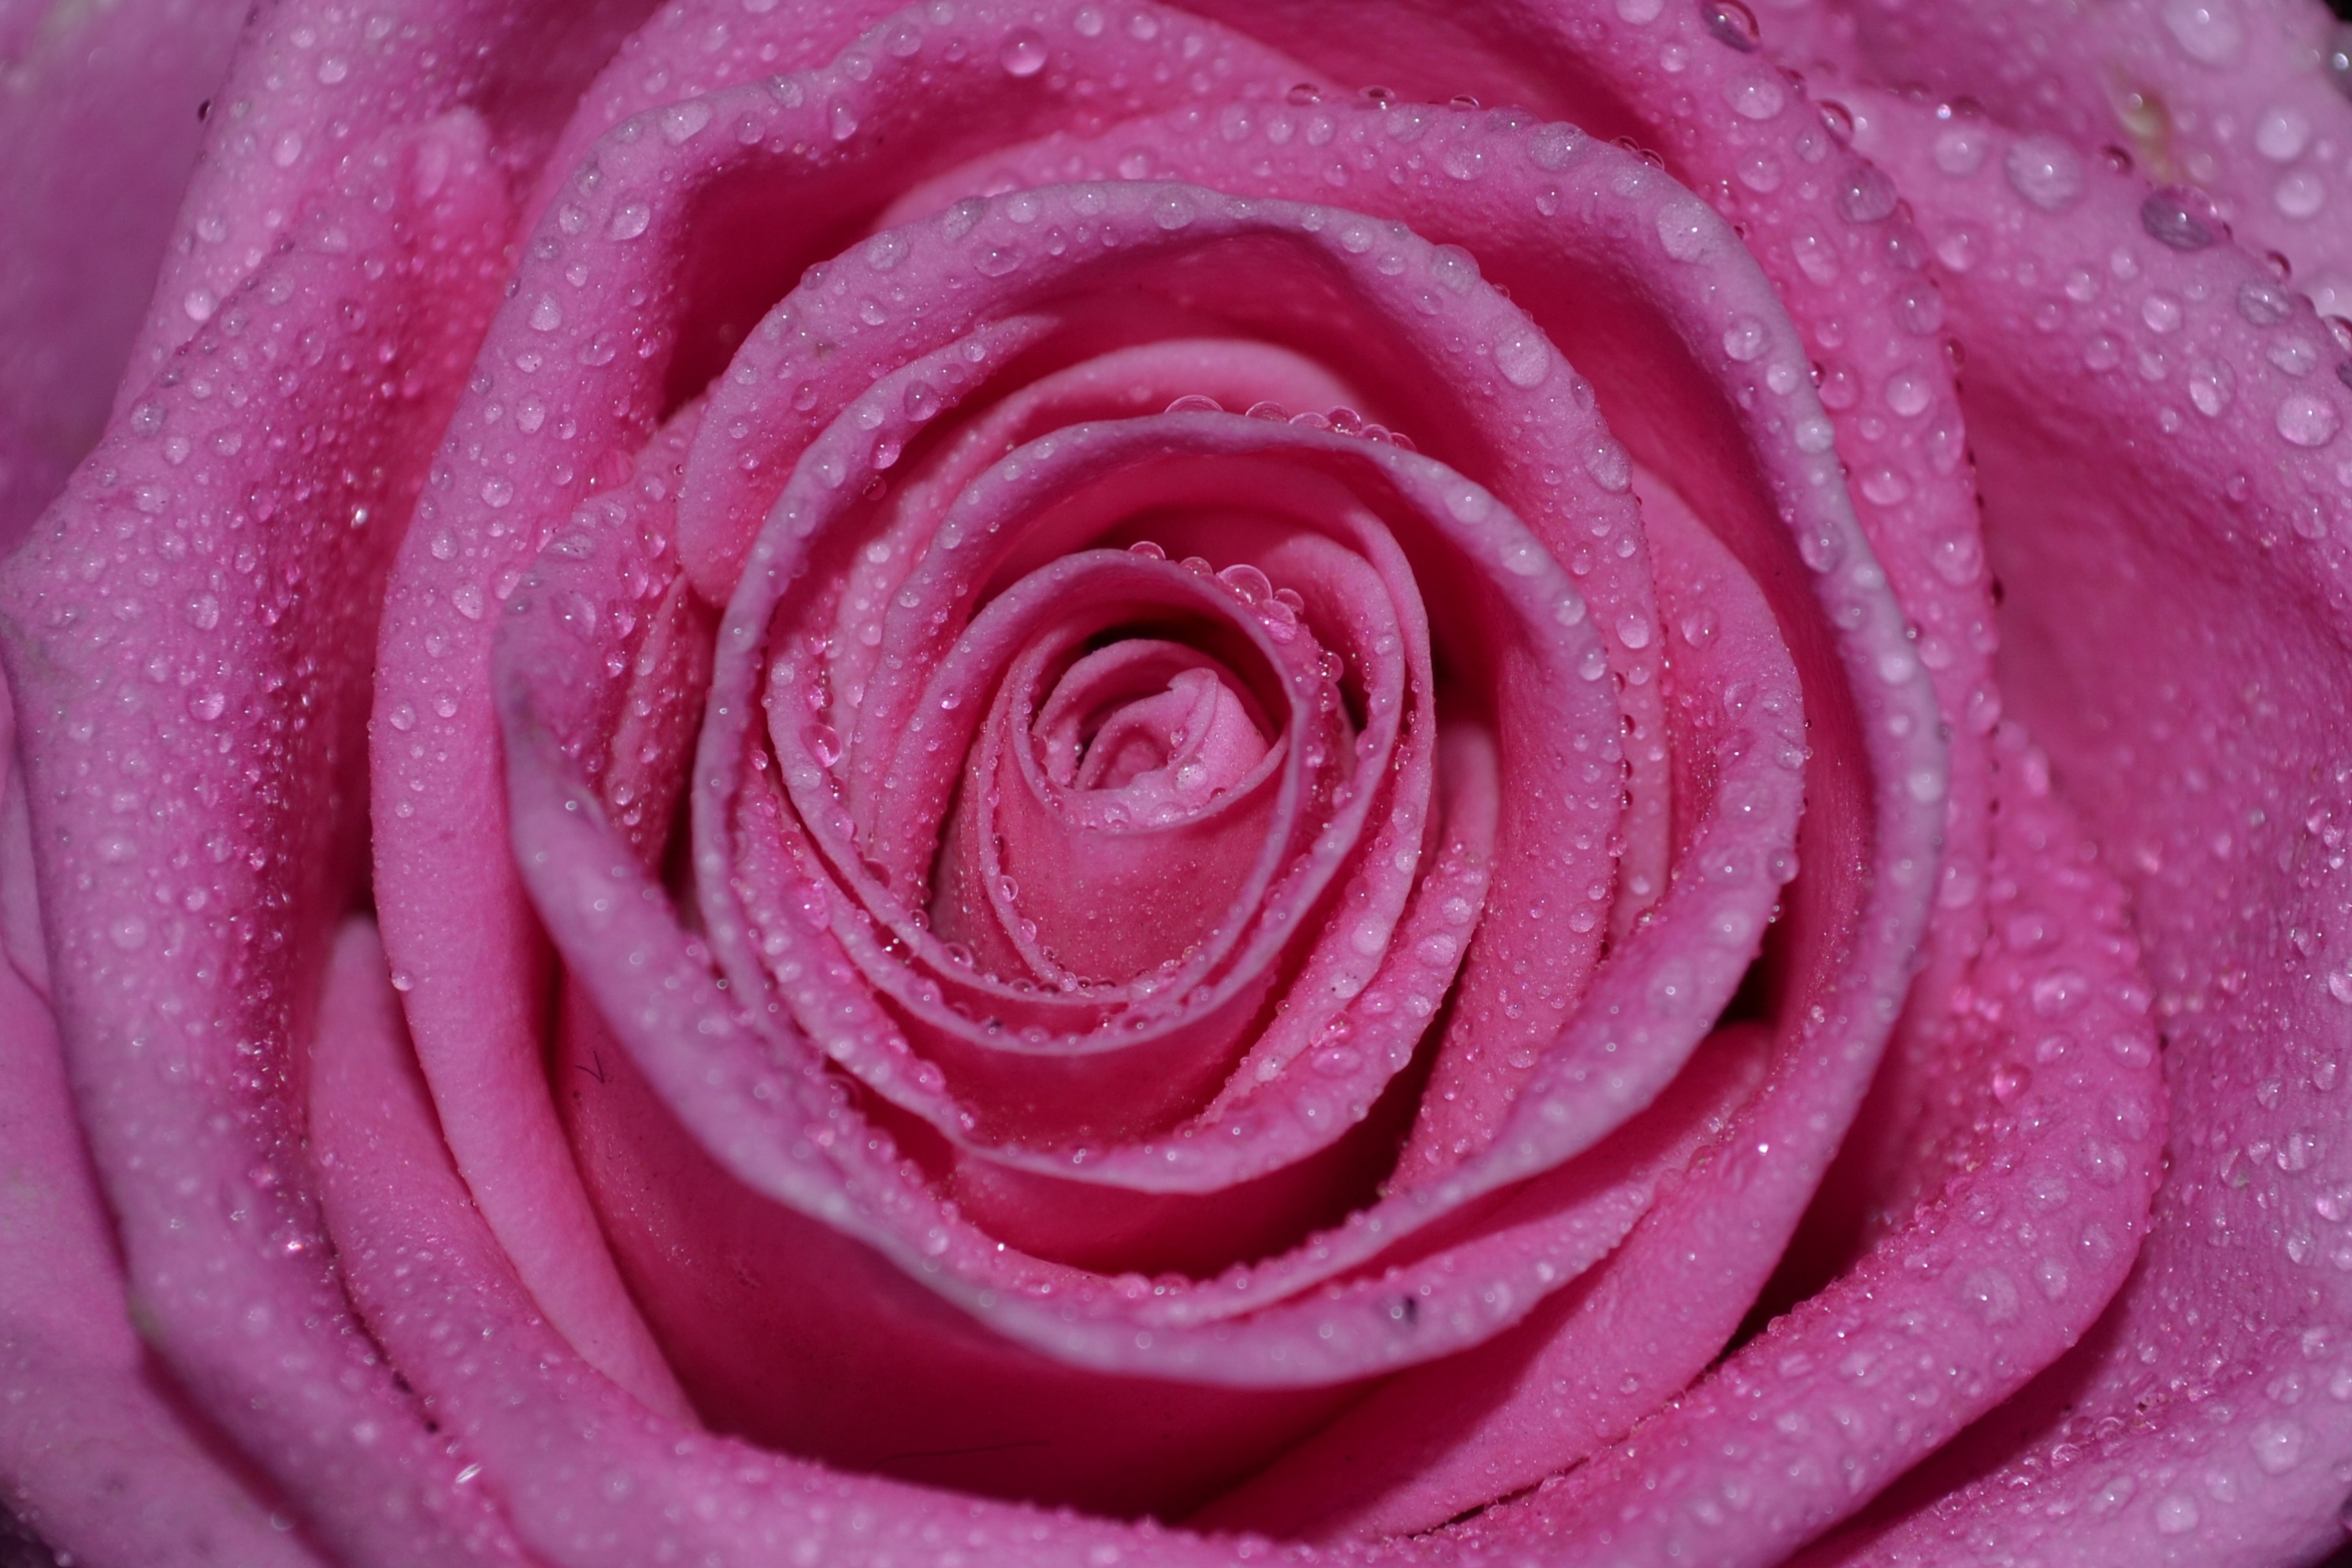 drops, macro, rose flower, rose, petals, bud